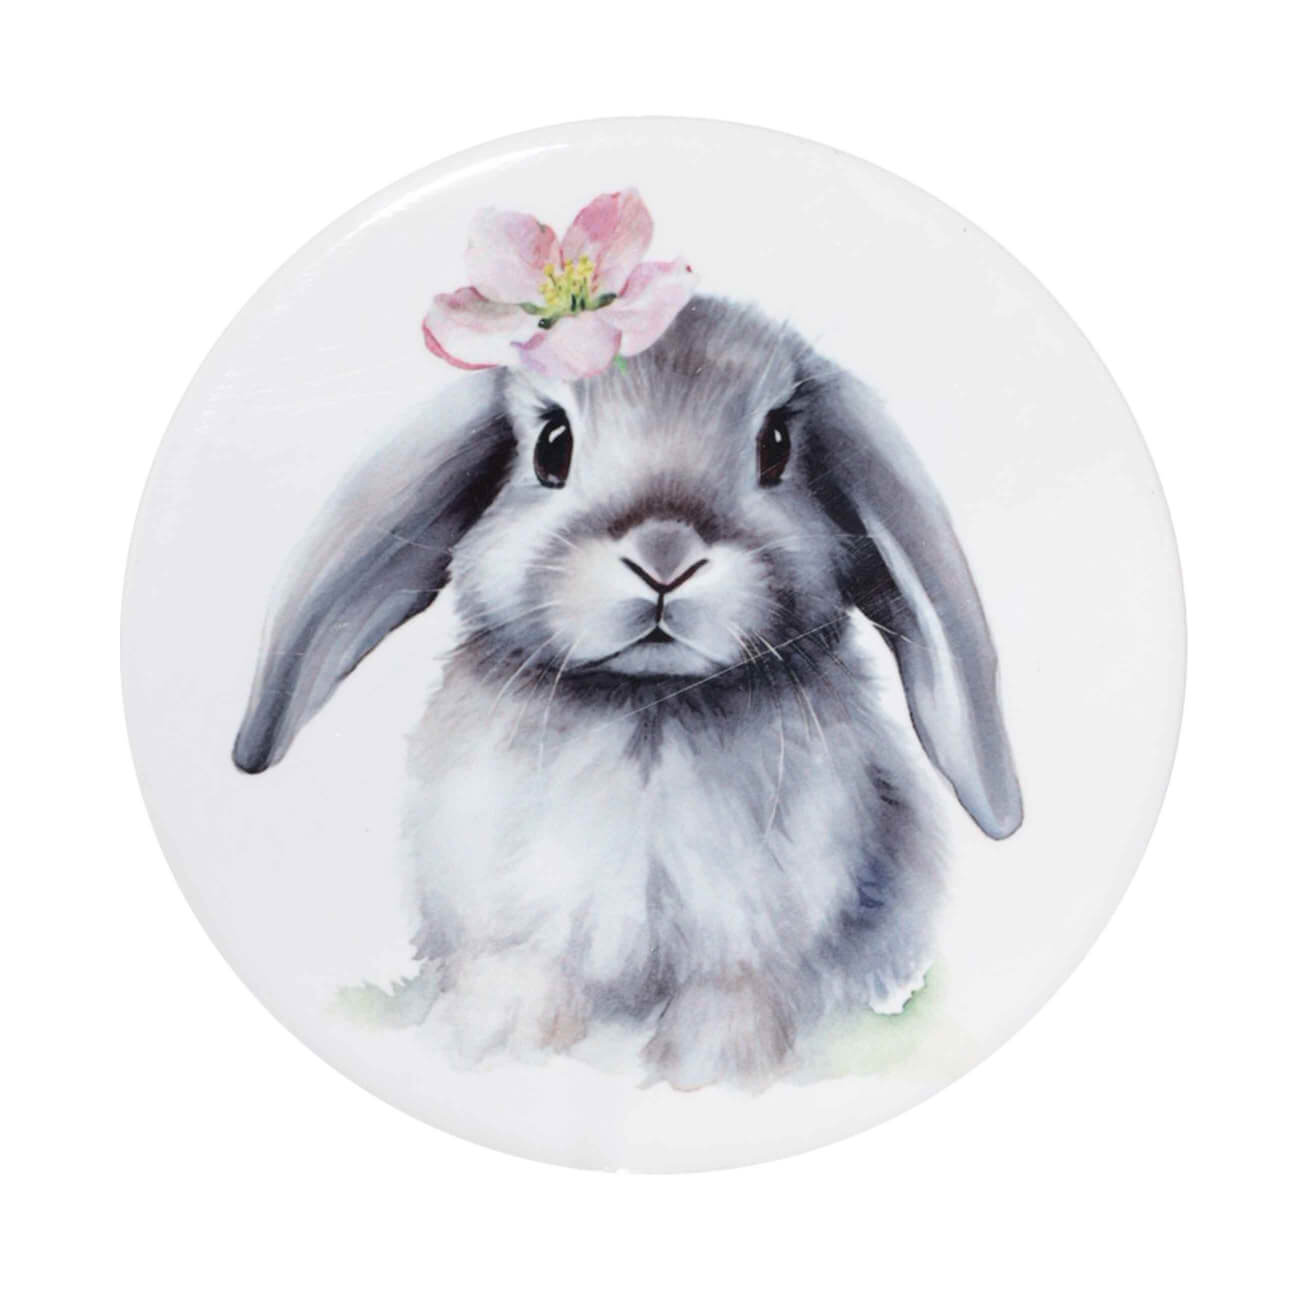 Подставка под кружку, 11 см, керамика/пробка, круглая, белая, Кролик с цветком, Pure Easter подставка для яйца 6 см керамика белая кролик в ах easter